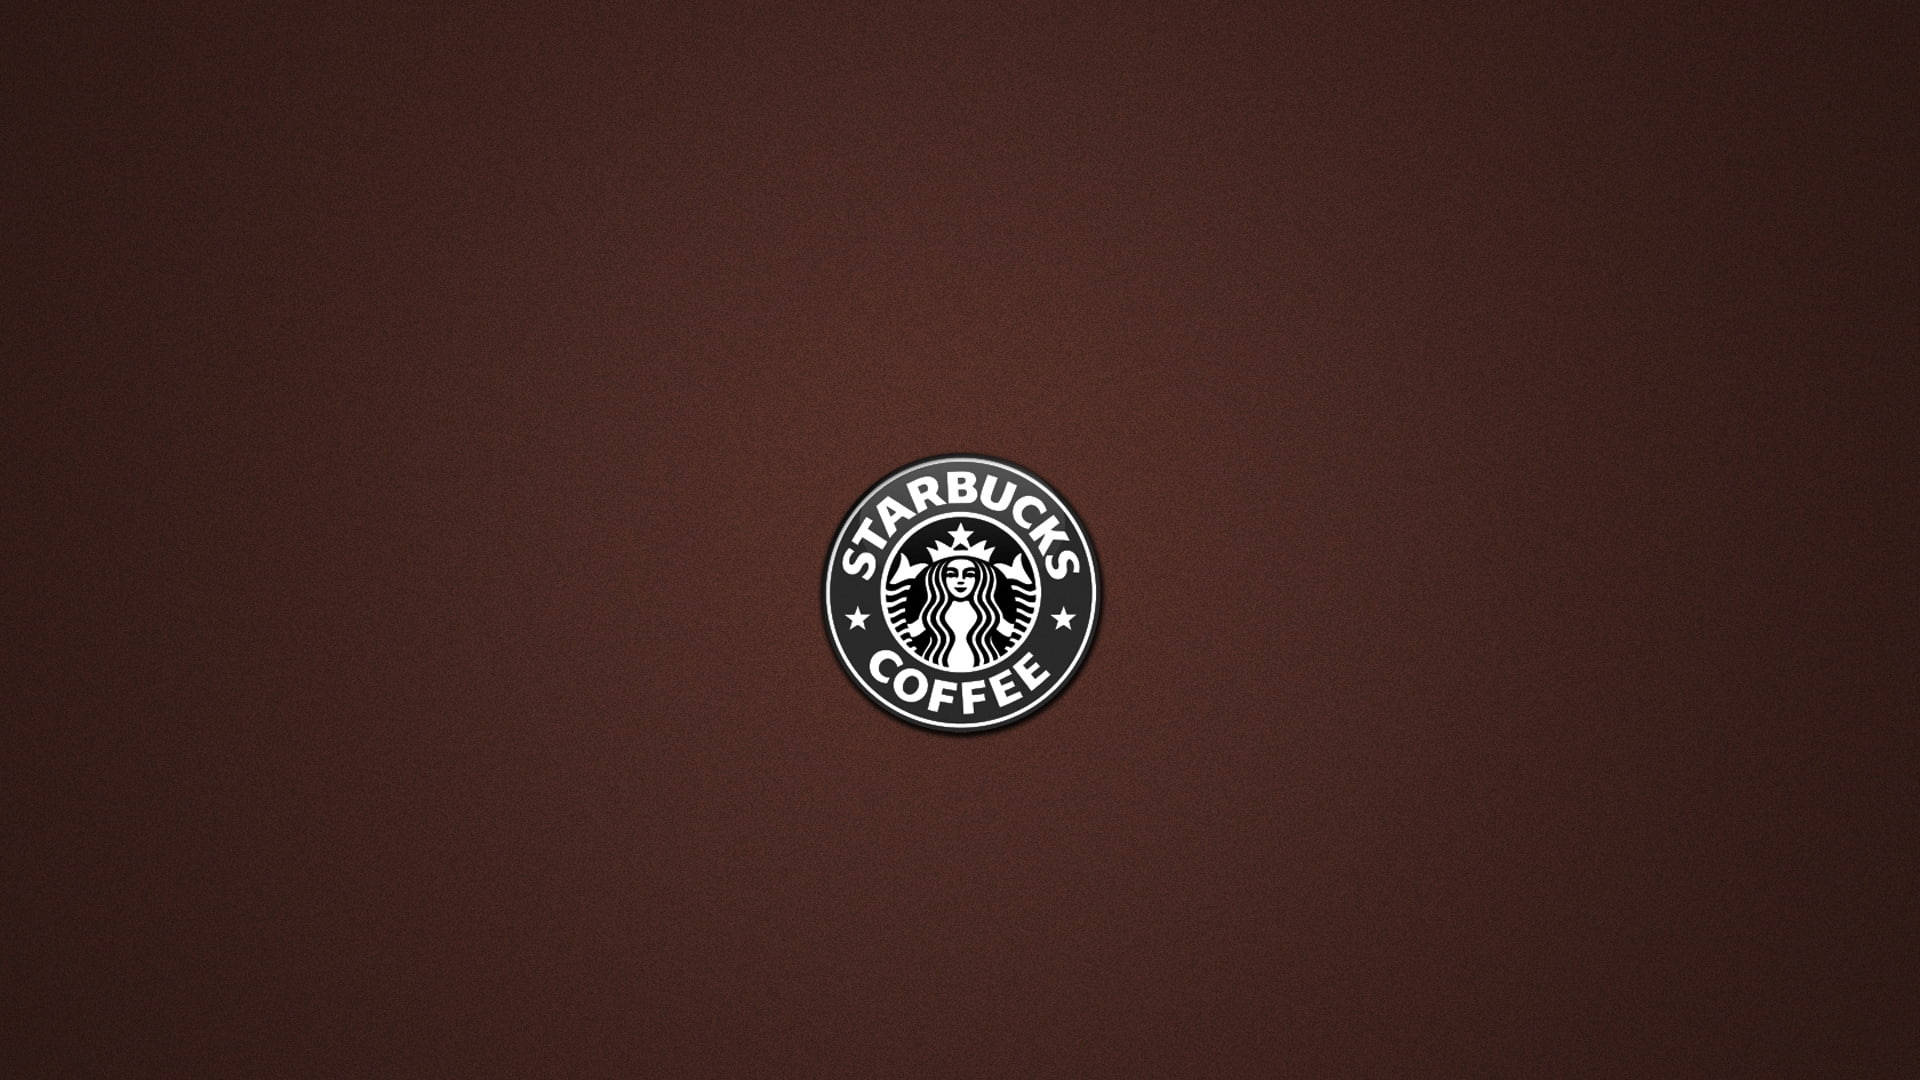 Starbucks Logo On Brown Background Wallpaper